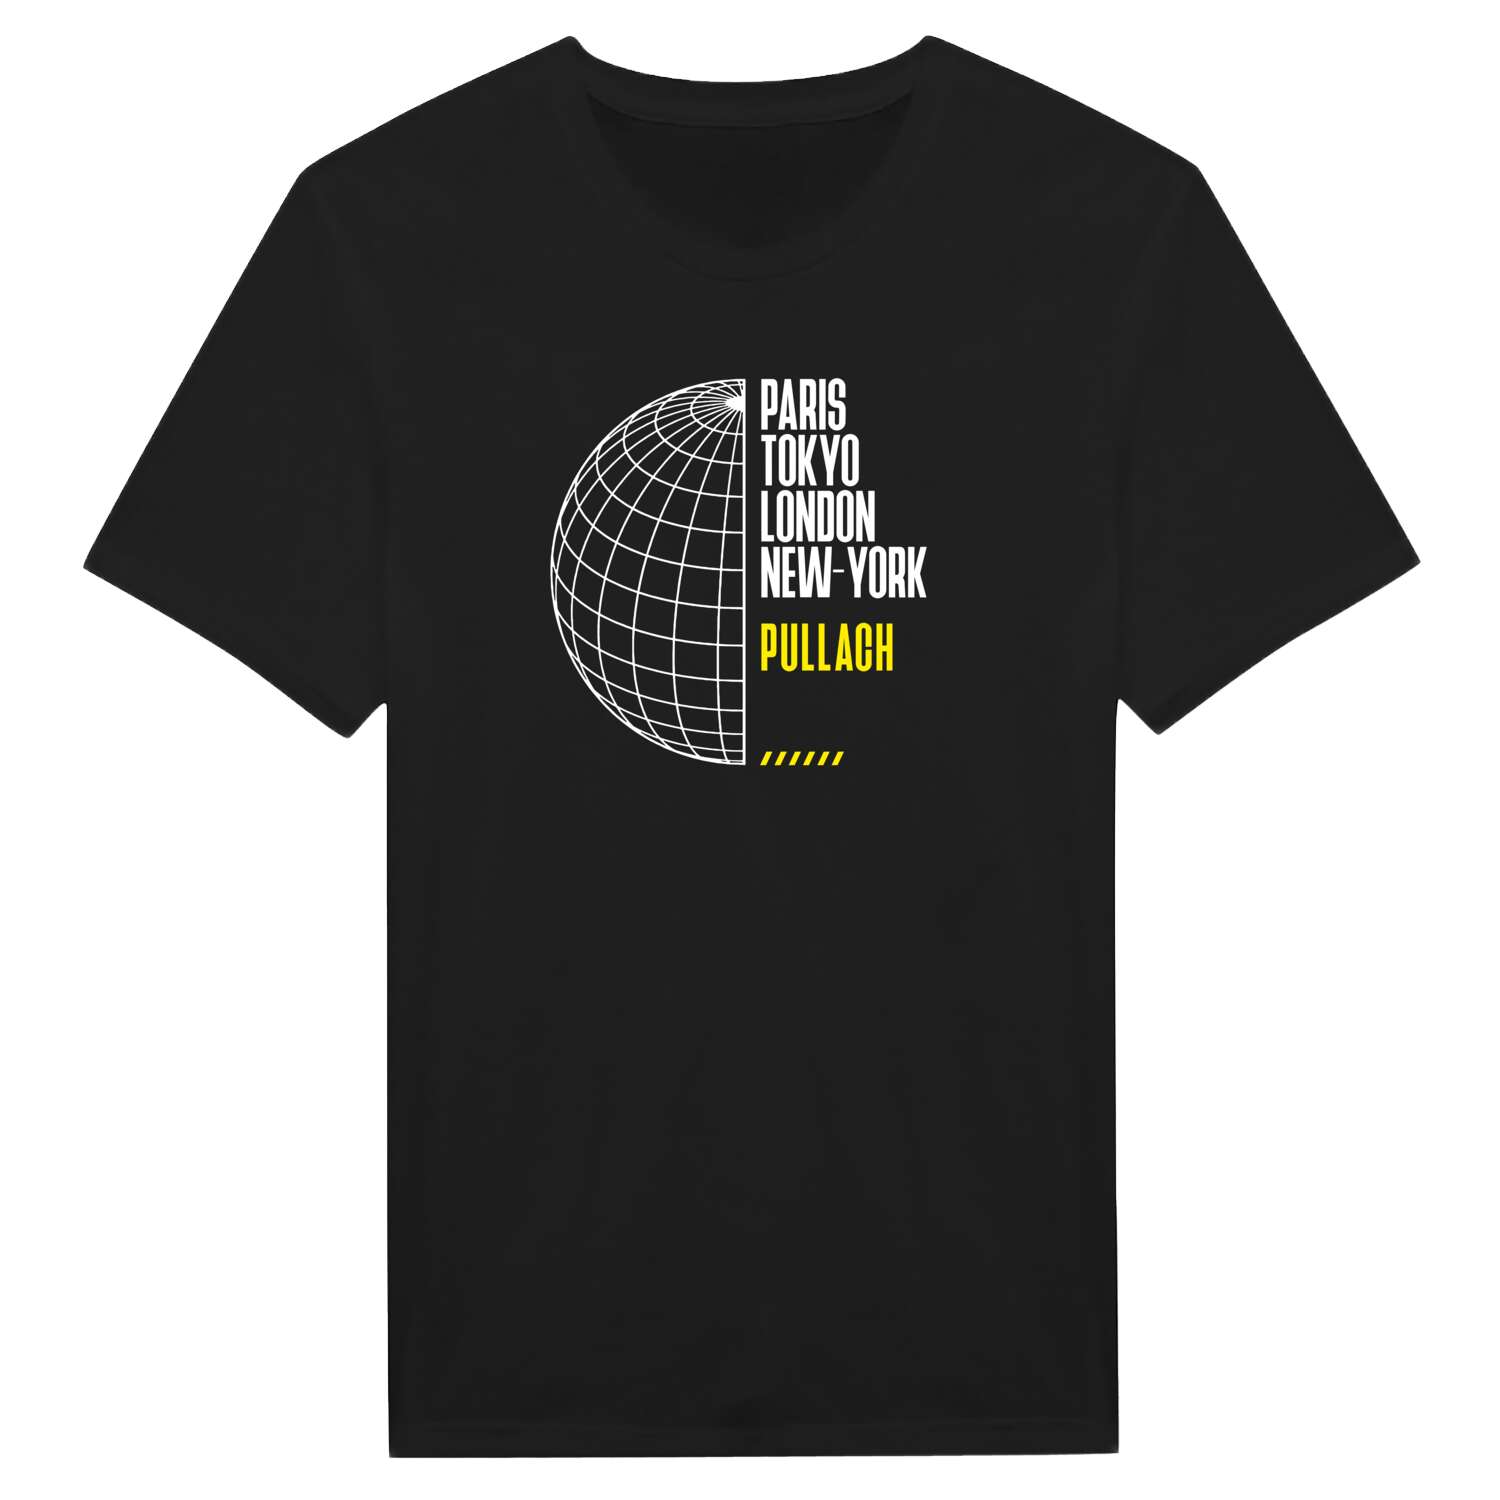 Pullach T-Shirt »Paris Tokyo London«